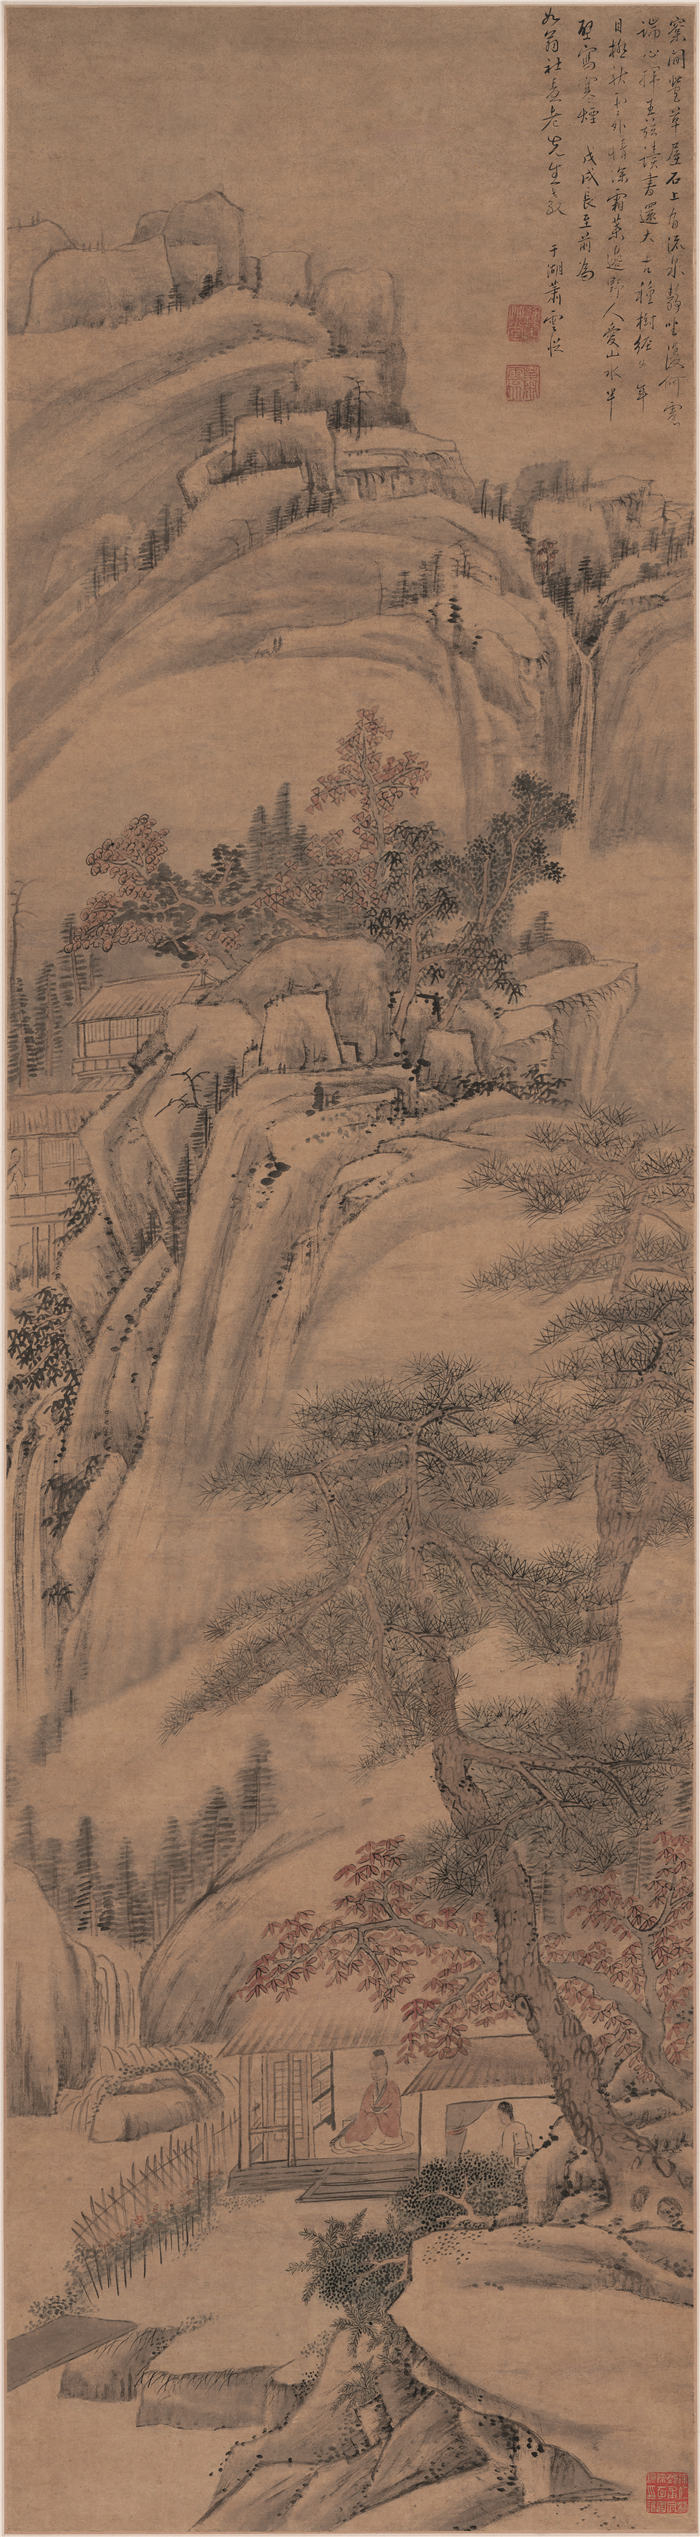 清 萧云从 《秋岭山泉图》 纸本高清作品  45.6x165.3